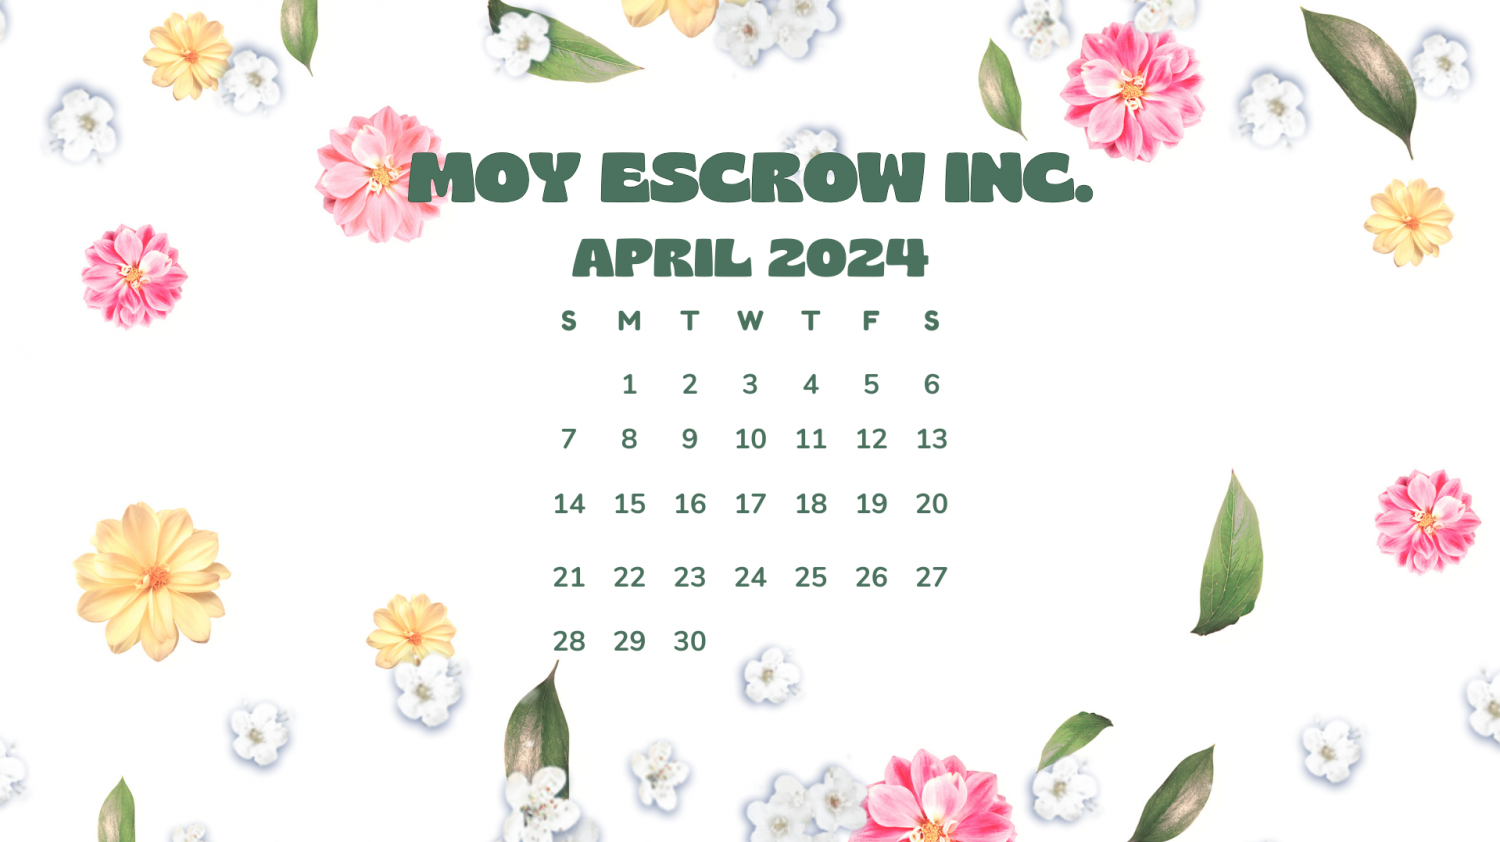 Moy Escrow Inc.